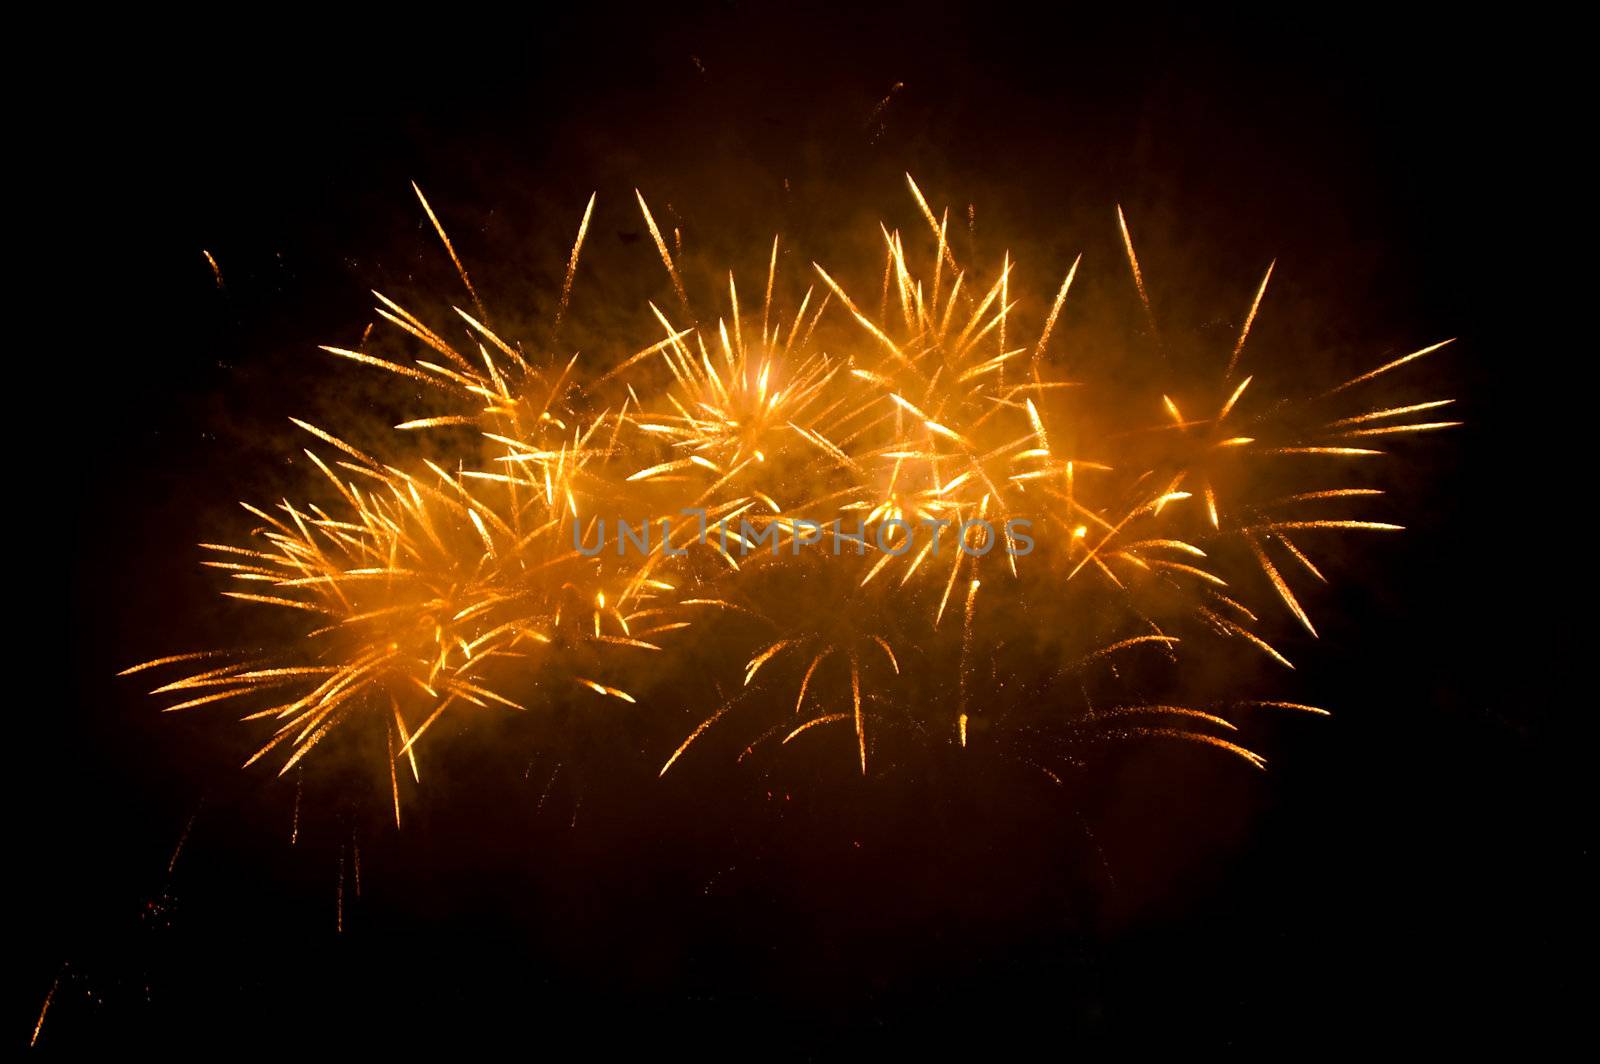 golden fireworks exploding high in the dark sky  